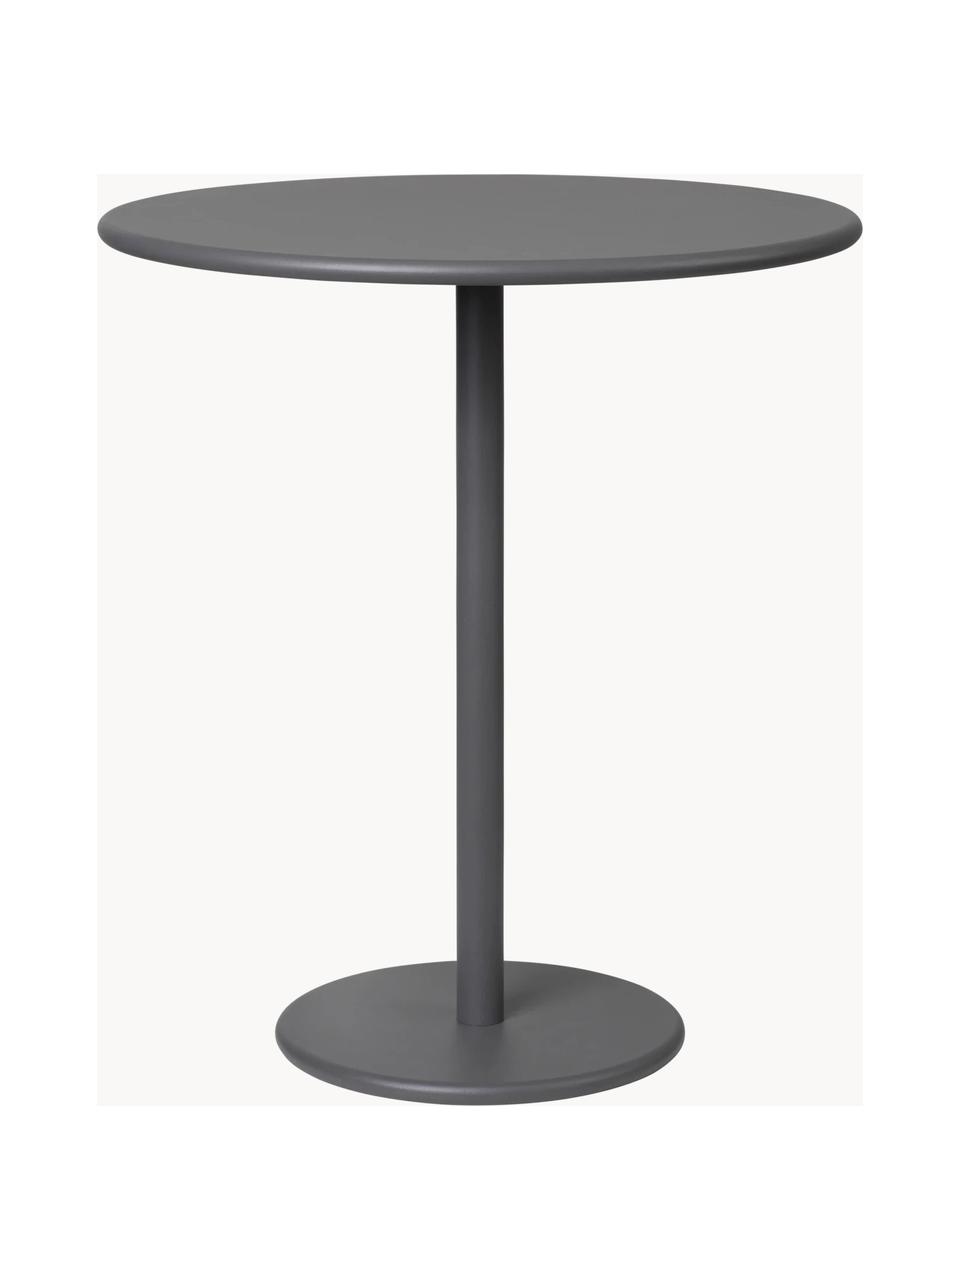 Zewnętrzny stolik pomocniczy Stay, Aluminium malowane proszkowo, Antracytowy, Ø 40 x W 45 cm